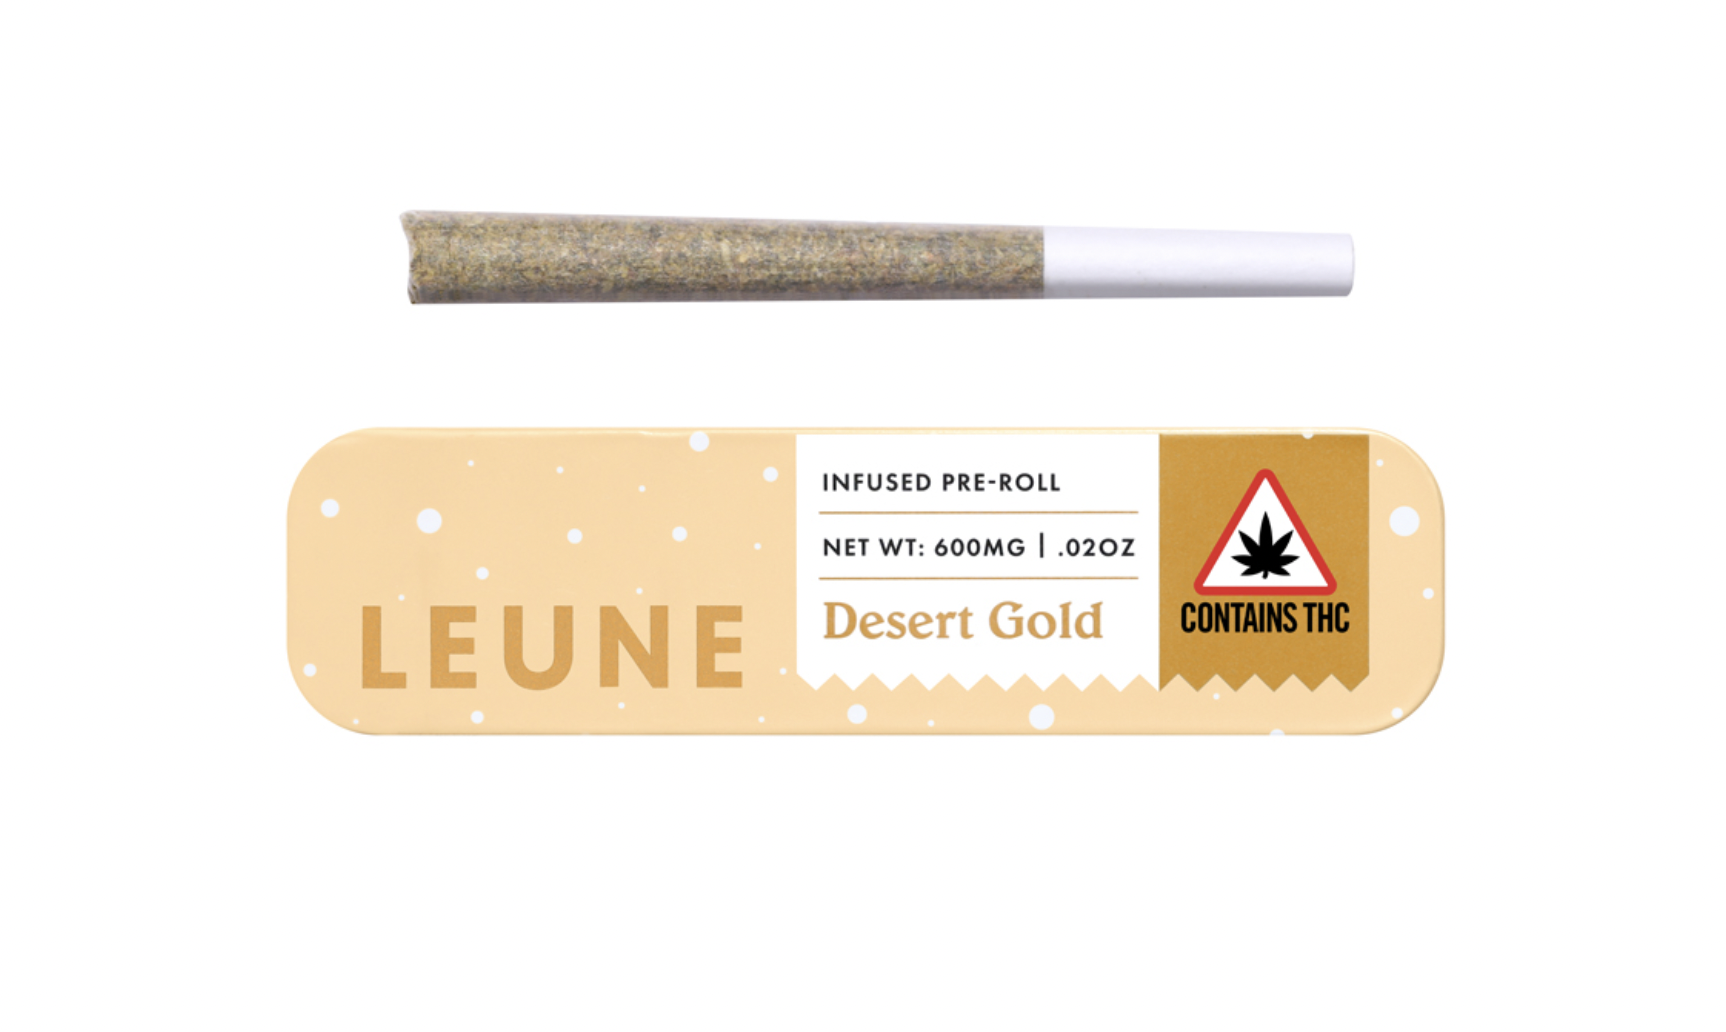 LEUNE Desert Gold Pre-Roll